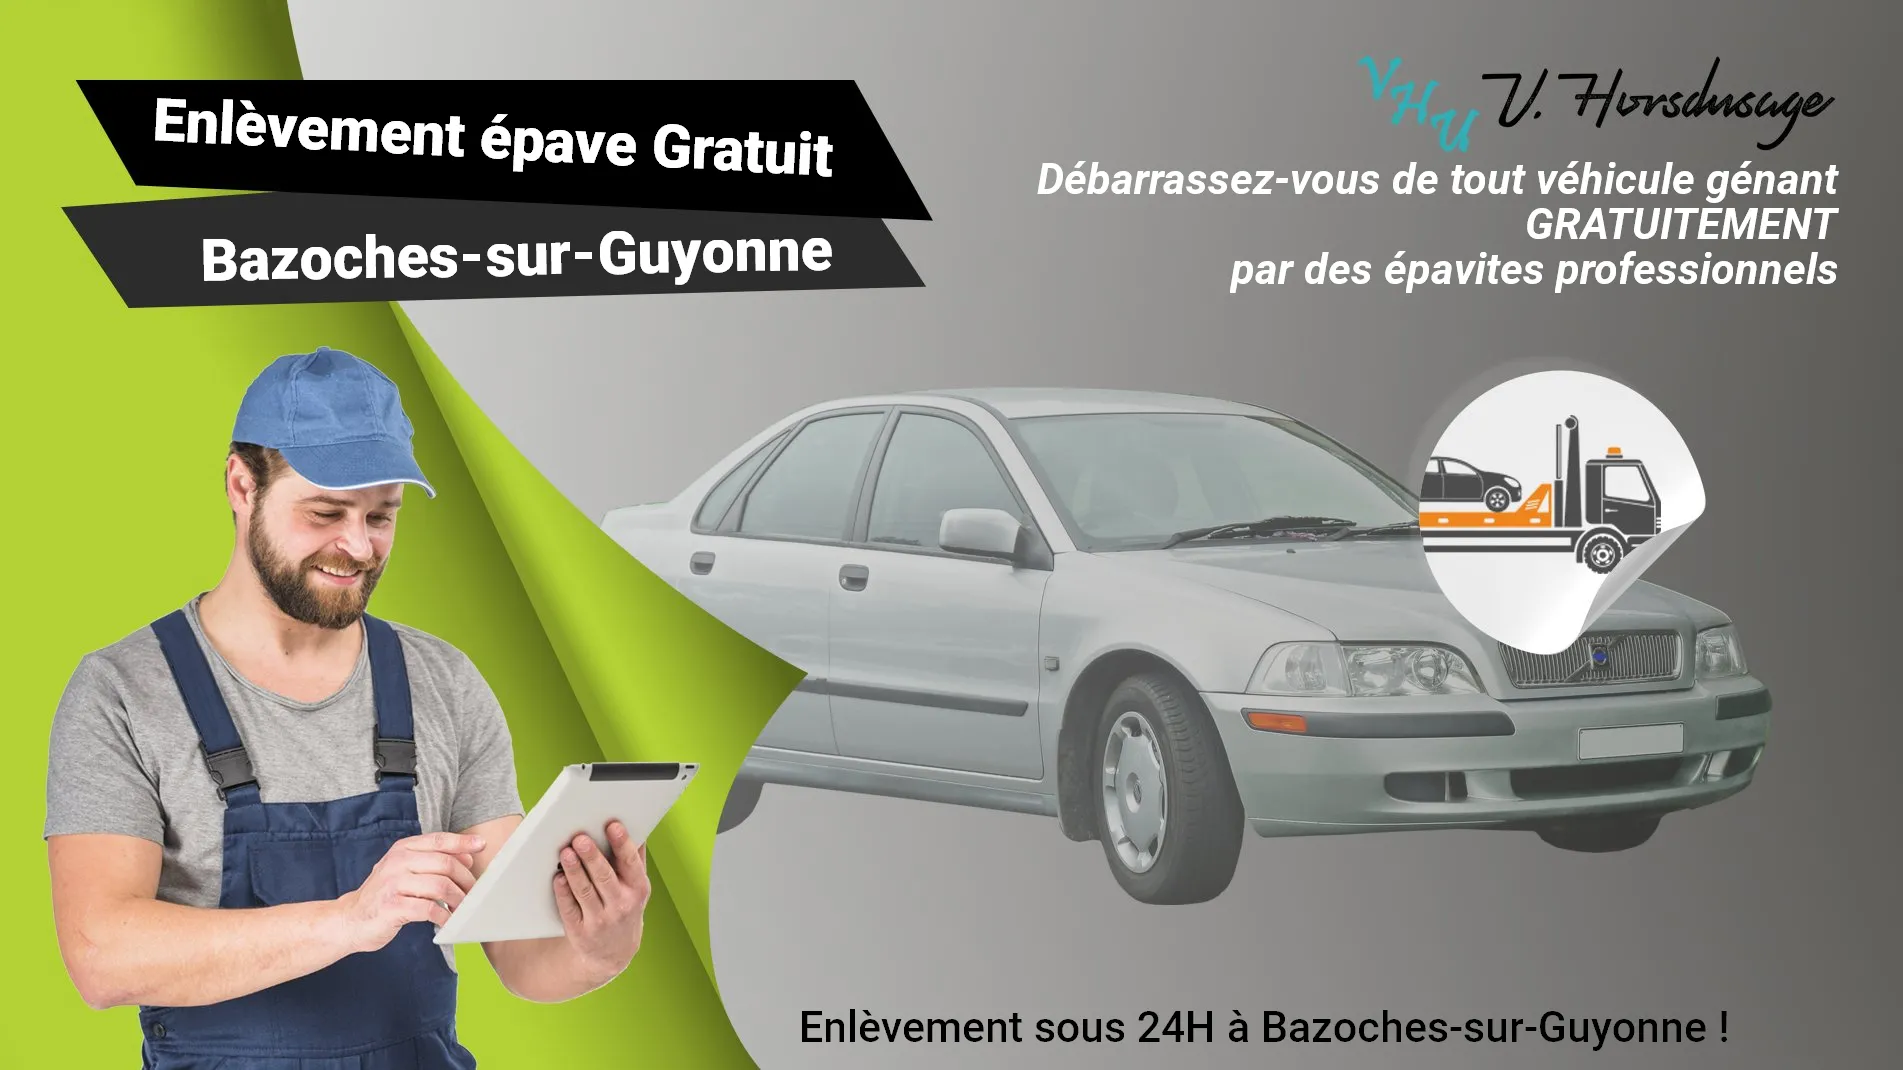 Pour un enlèvement gratuit à Bazoches-sur-Guyonne, contactez nos épavistes agréé VHU